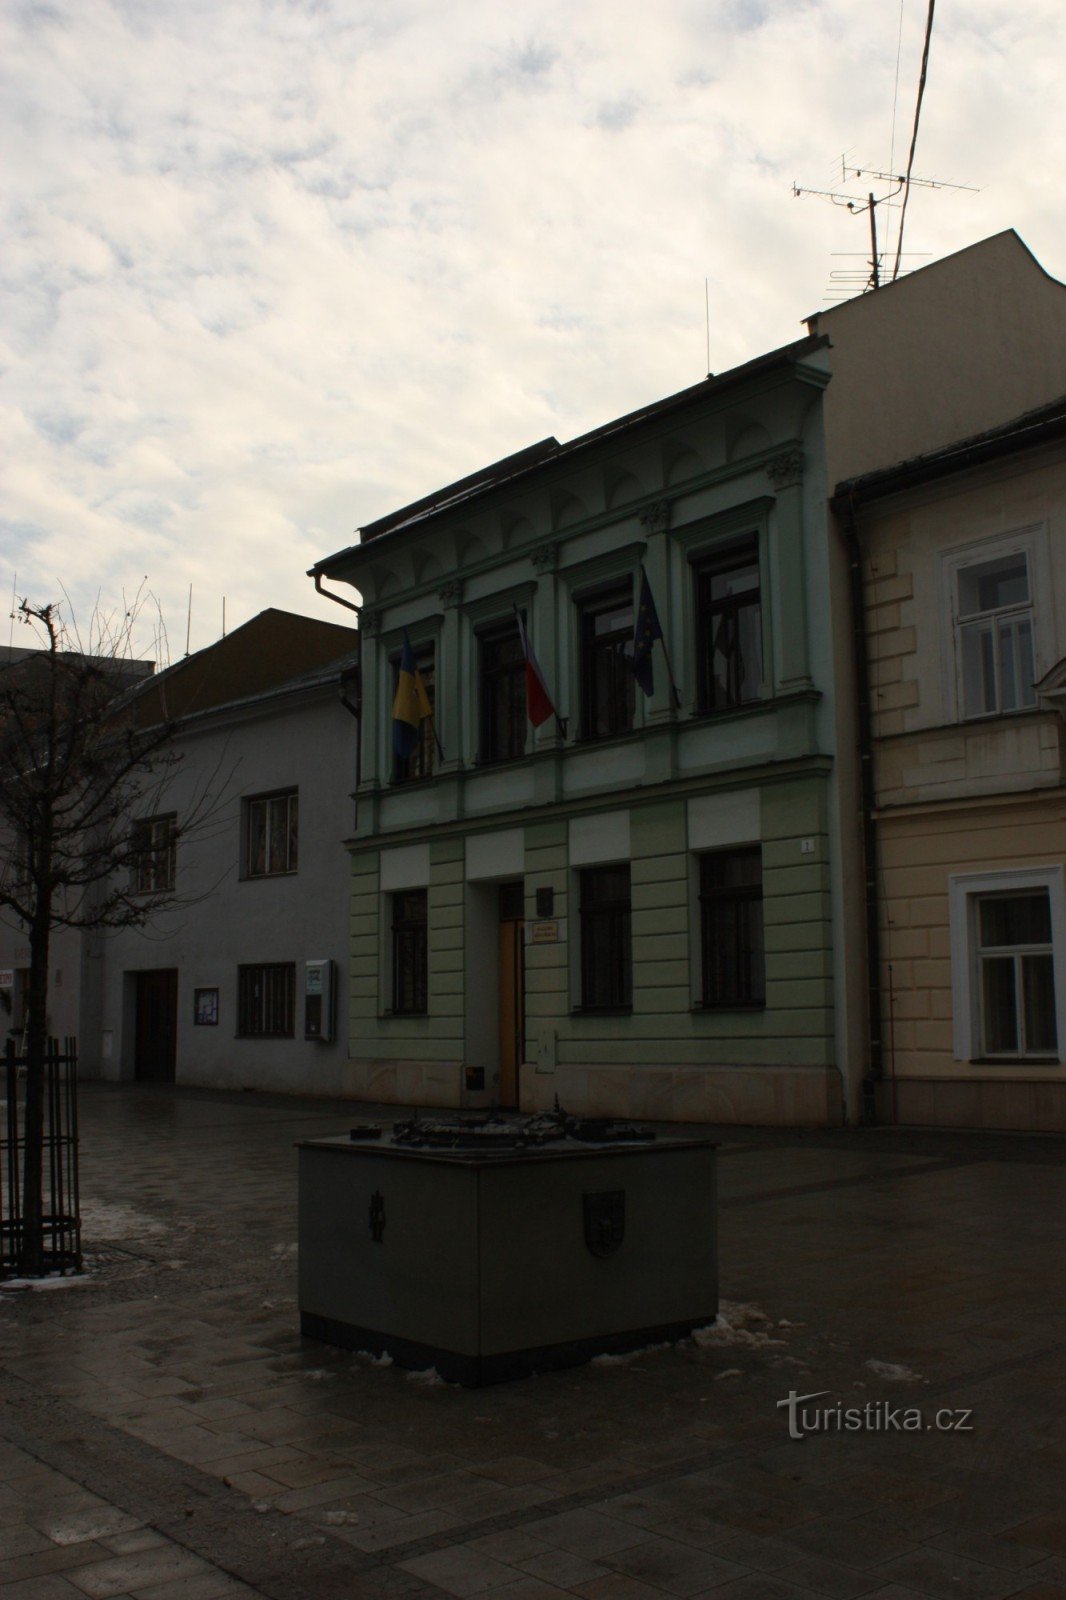 Bronasta maketa mesta Přerov na trgu TG Masaryk v Přerovu